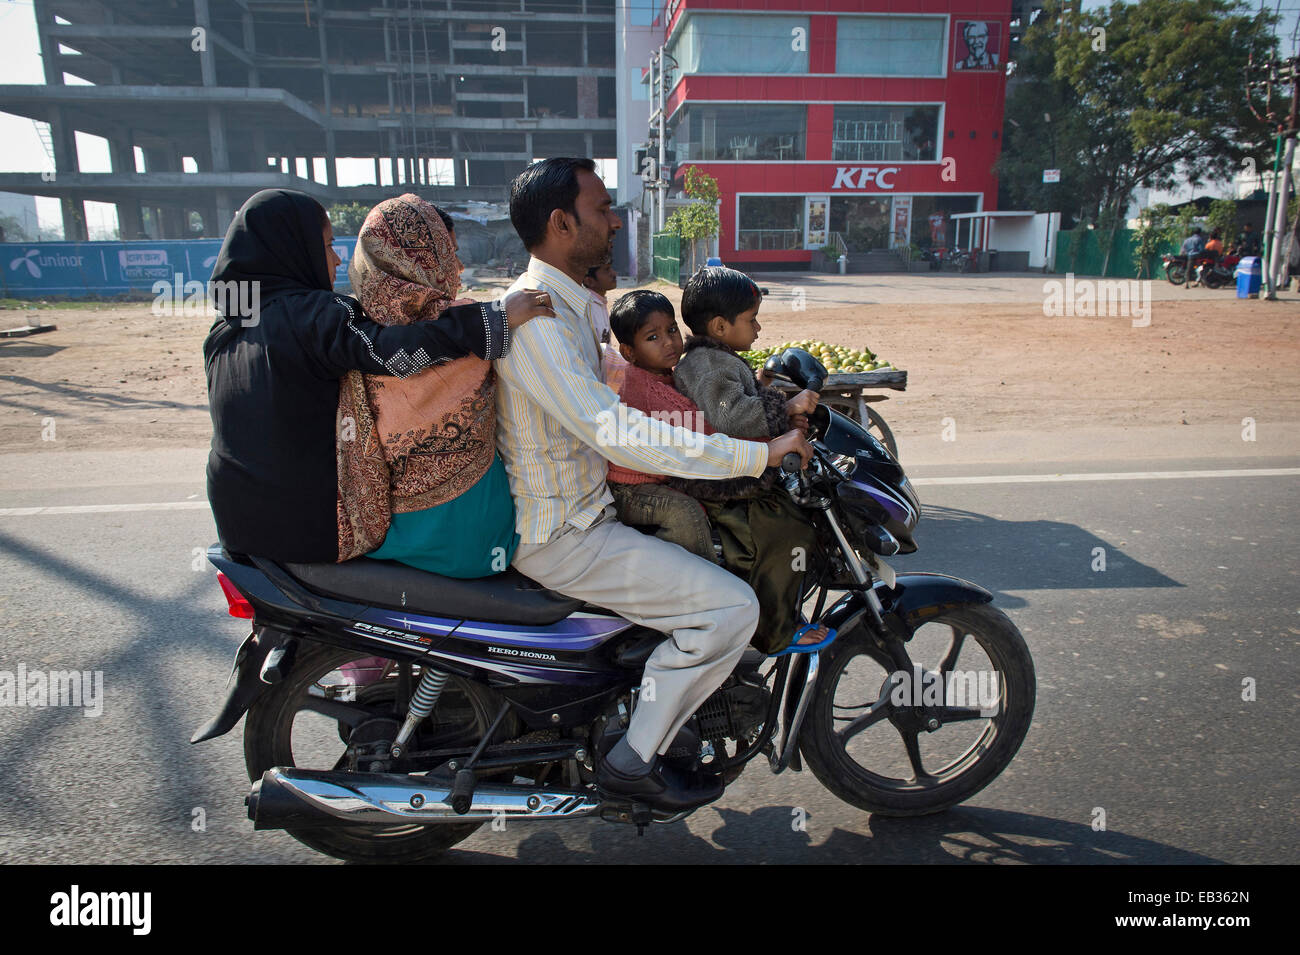 Zwei Frauen, ein Mann und zwei Kindern reiten zusammen auf einem Motorrad, Agra, Uttar Pradesh, Indien Stockfoto